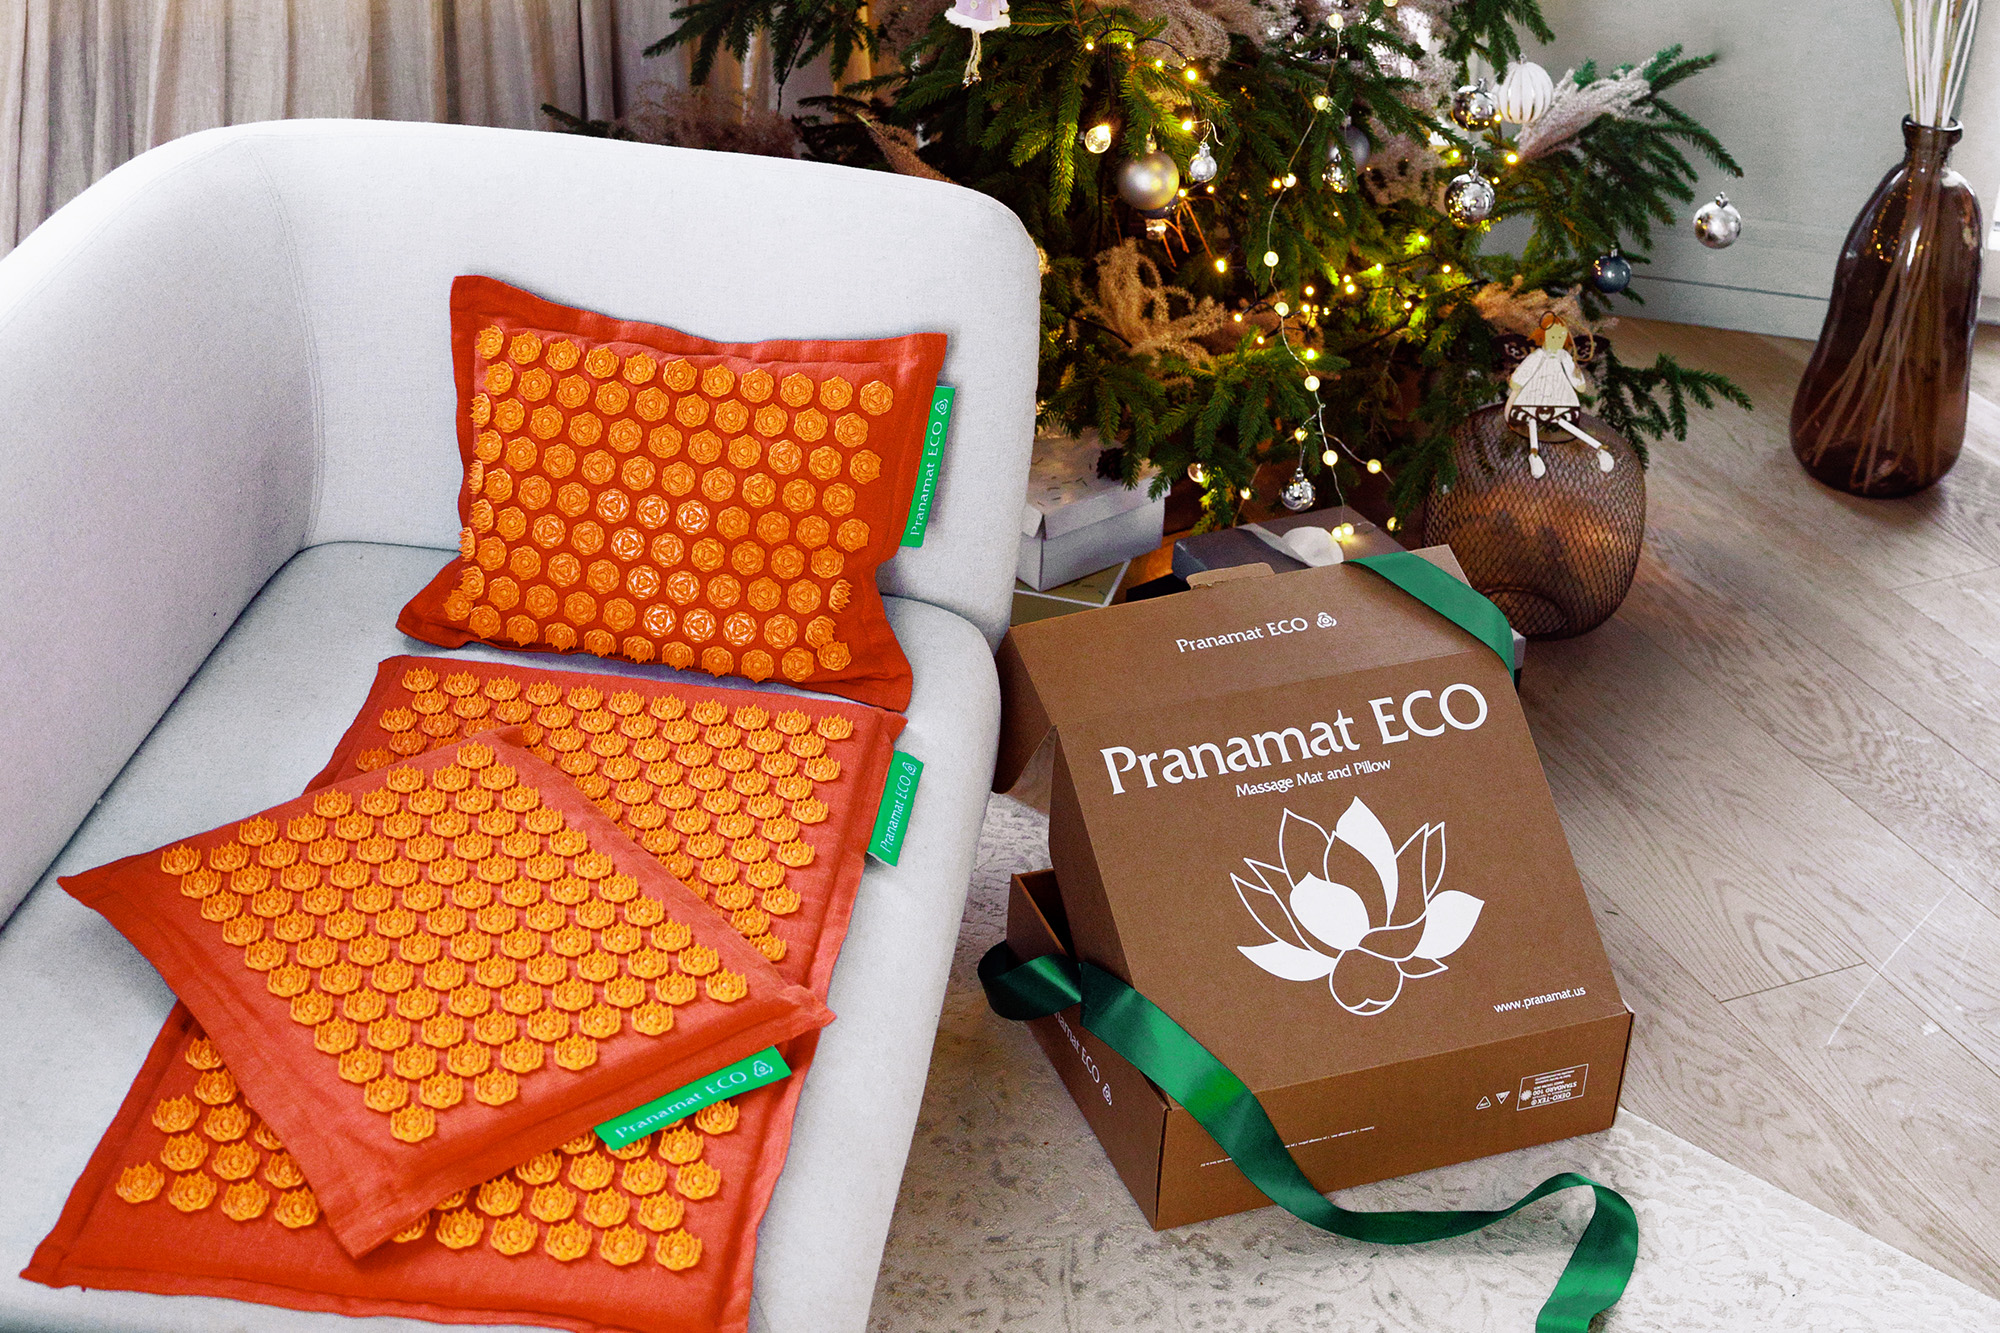 Akupresúrna podložka Pranamat Eco ako vianočný darček.